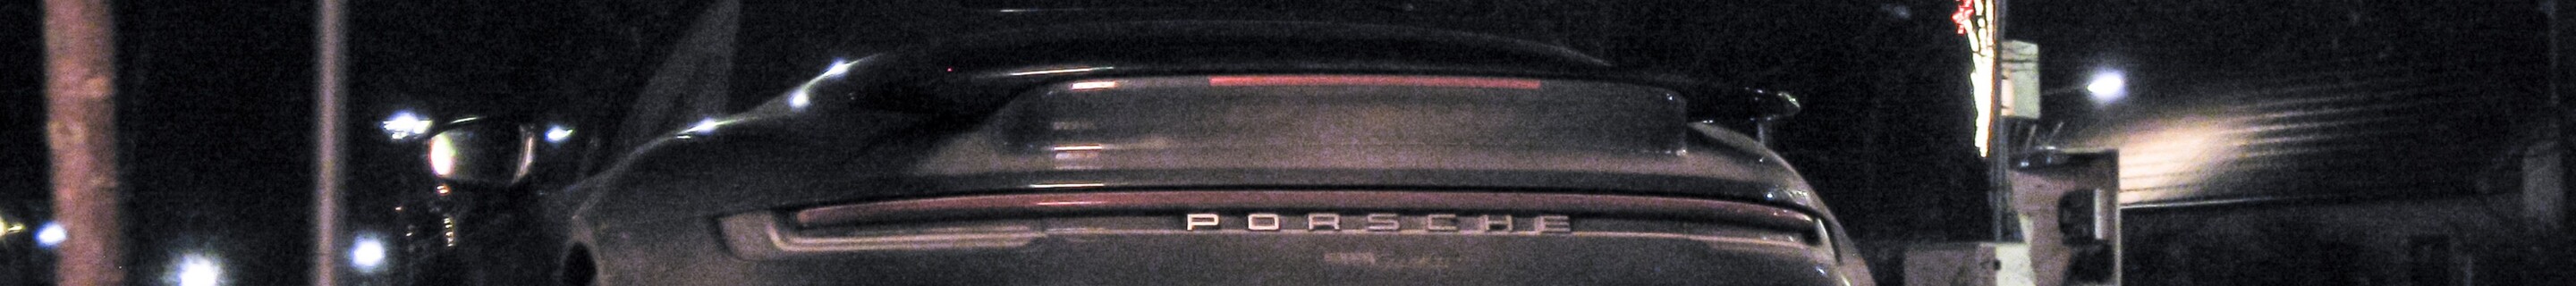 Porsche 992 Turbo Cabriolet